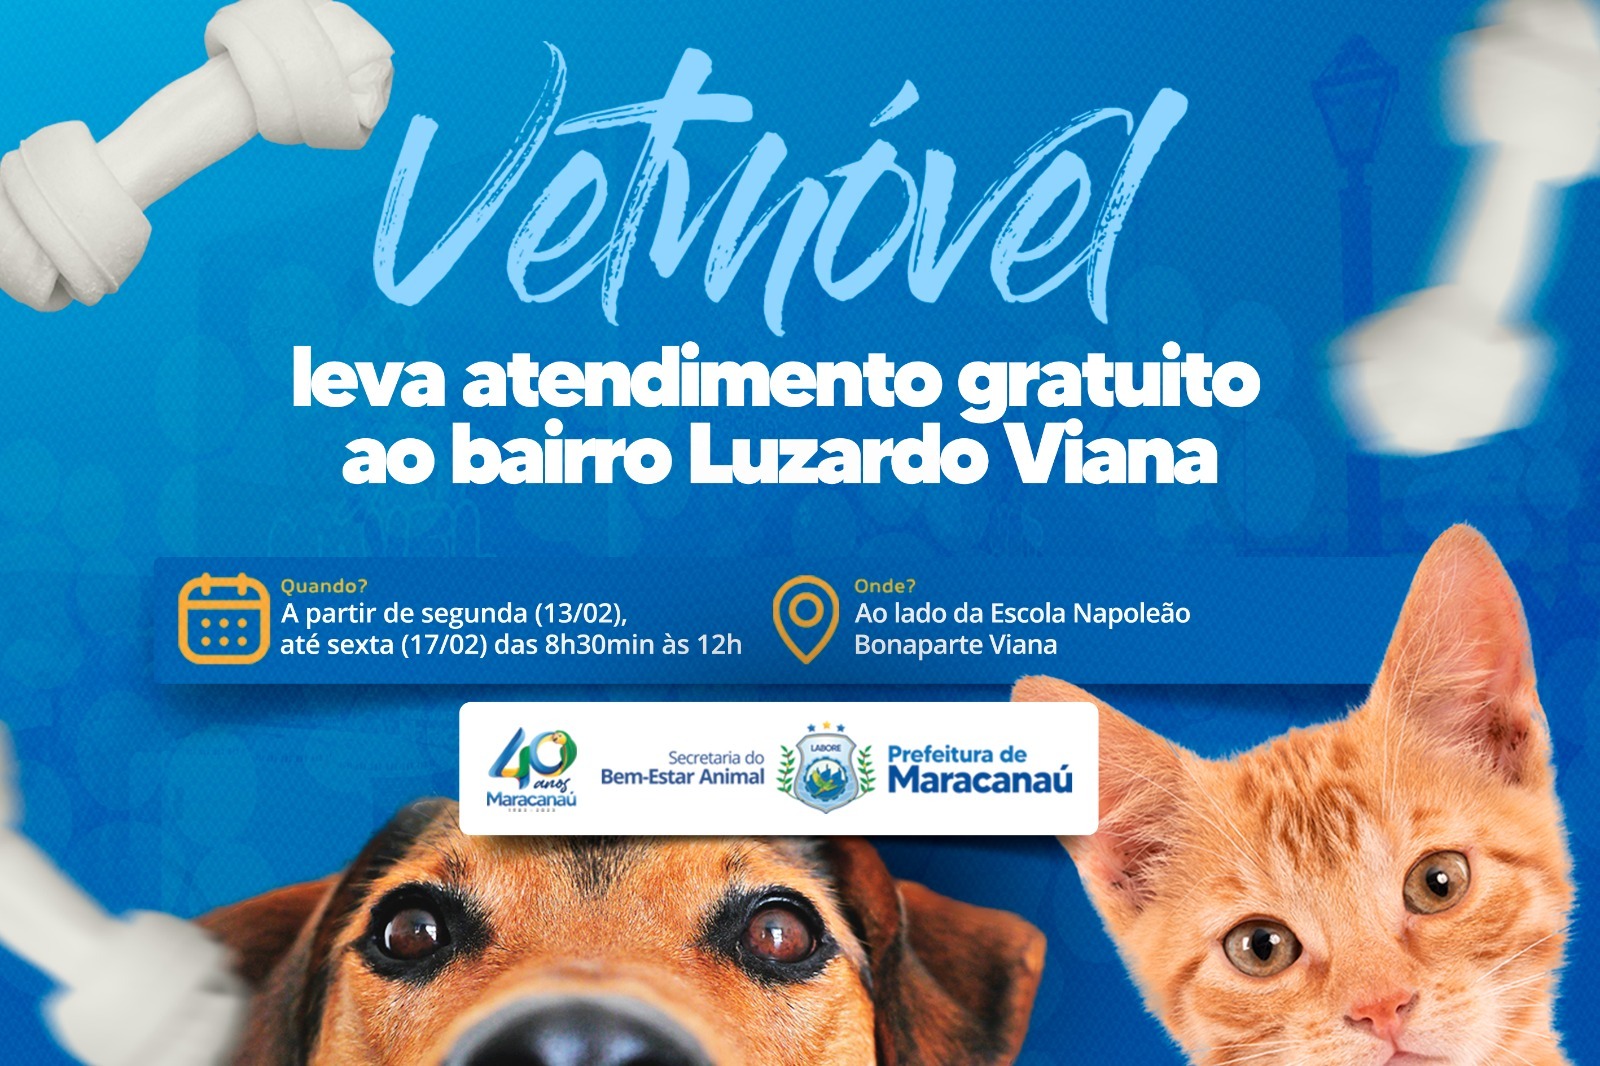 You are currently viewing VetMóvel leva atendimento gratuito ao bairro Luzardo Viana